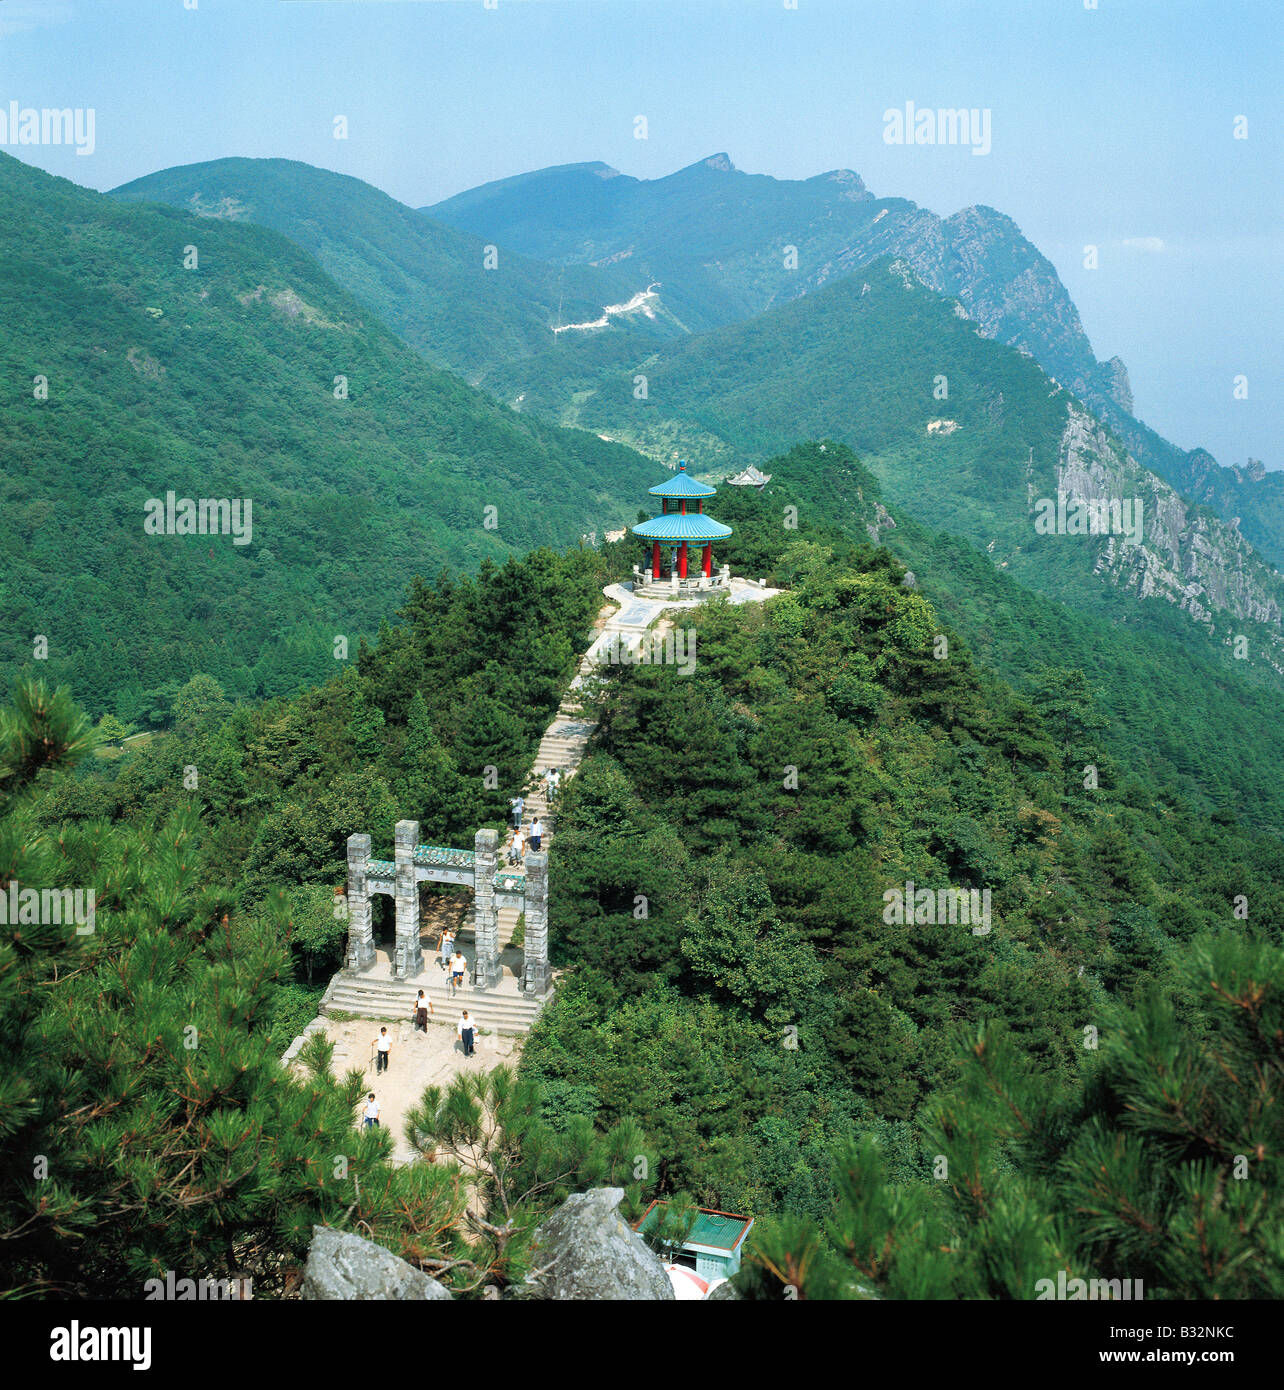 Тайань. Национальный парк Лушань Китай. Гора Тайшань Китай. Гора Тайшань (провинция Шаньдун). Горы Лушань Китай.